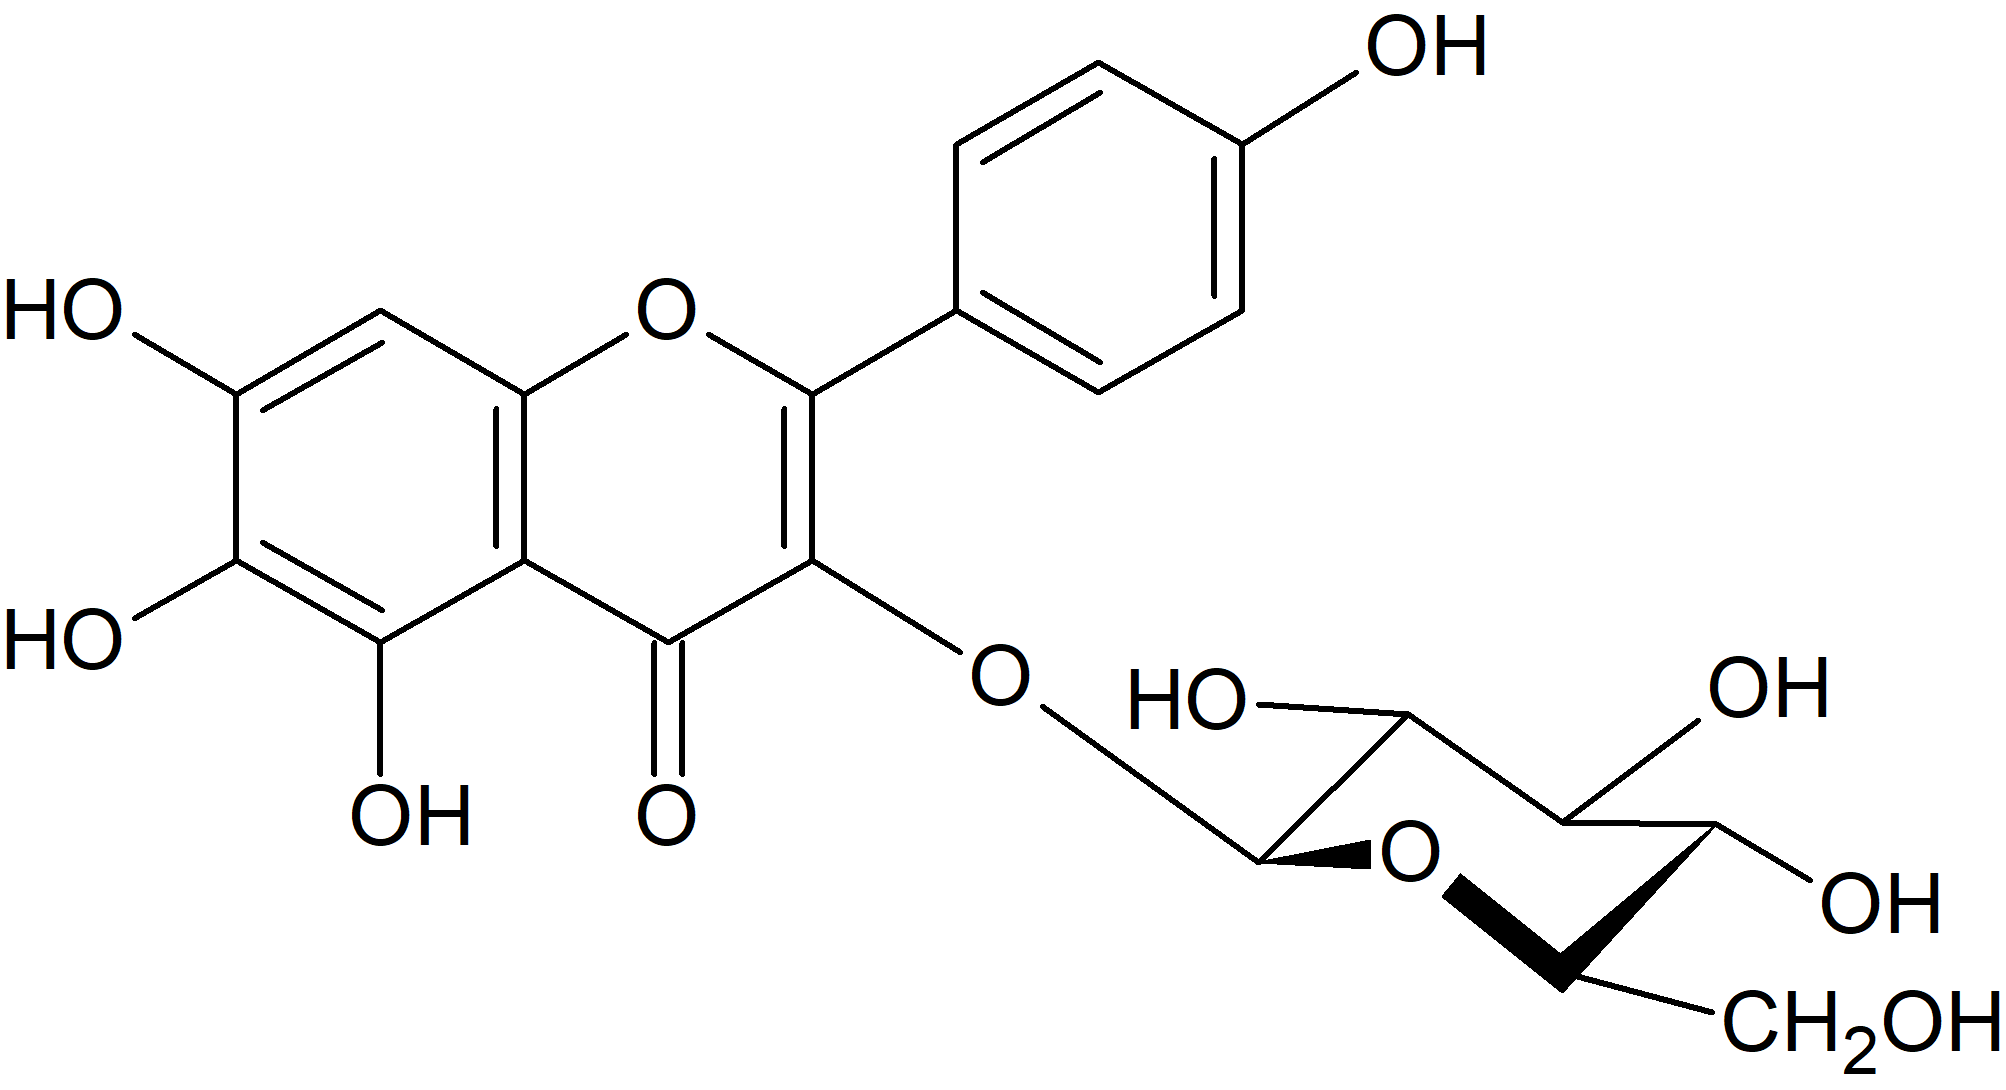 6-Hydroxykaempferol 3-O-glucoside